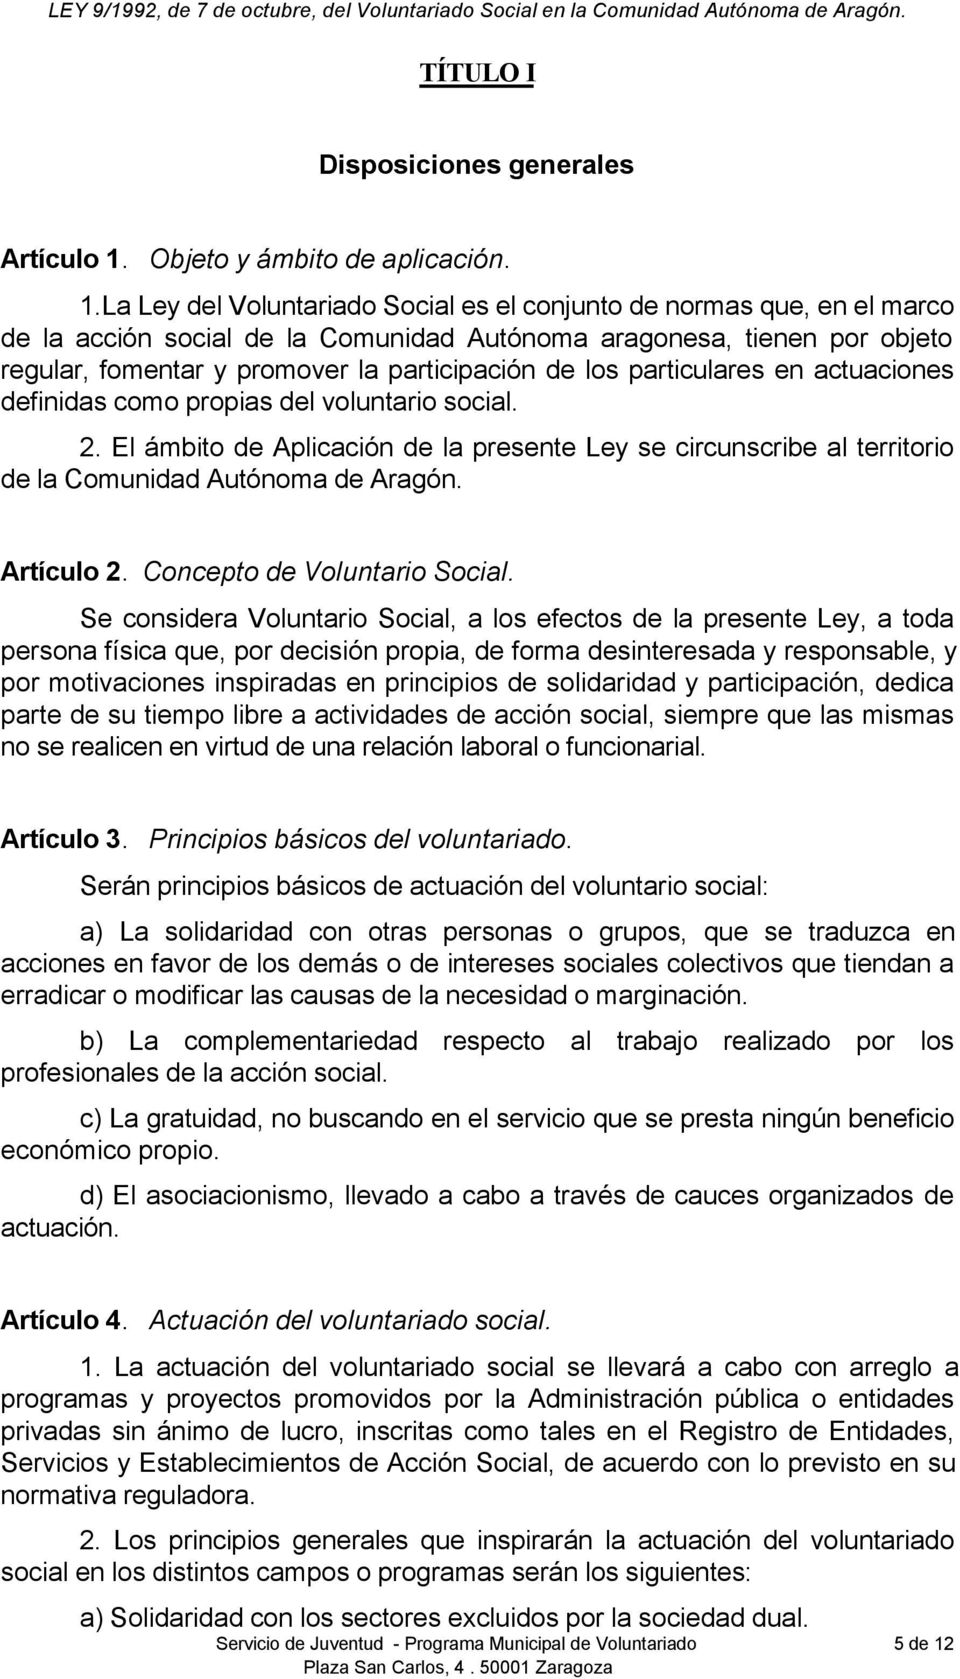 La Ley del Voluntariado Social es el conjunto de normas que, en el marco de la acción social de la Comunidad Autónoma aragonesa, tienen por objeto regular, fomentar y promover la participación de los